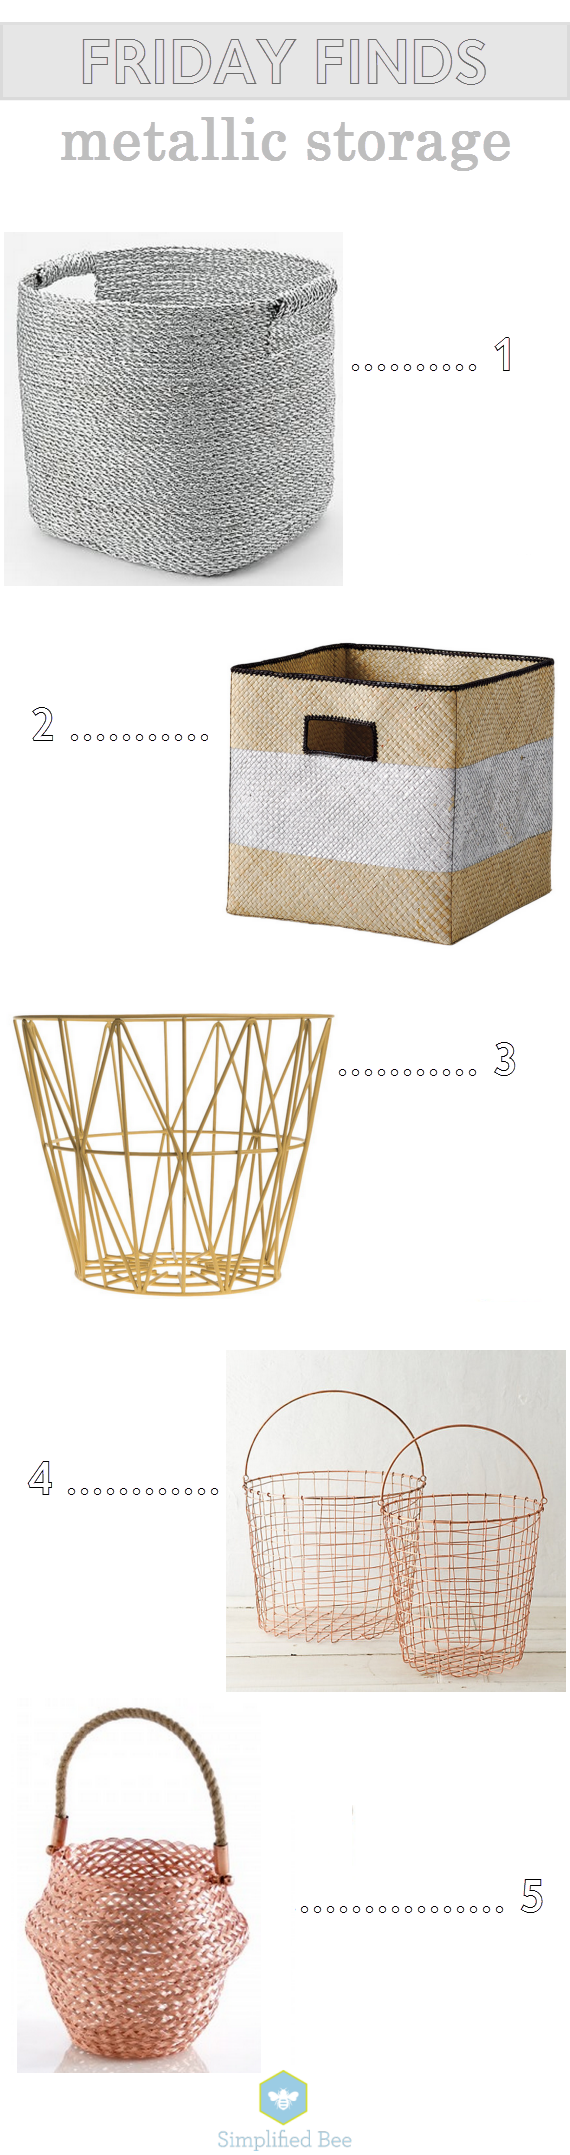 metallic storage bins & baskets // www.simplifiedbee.com